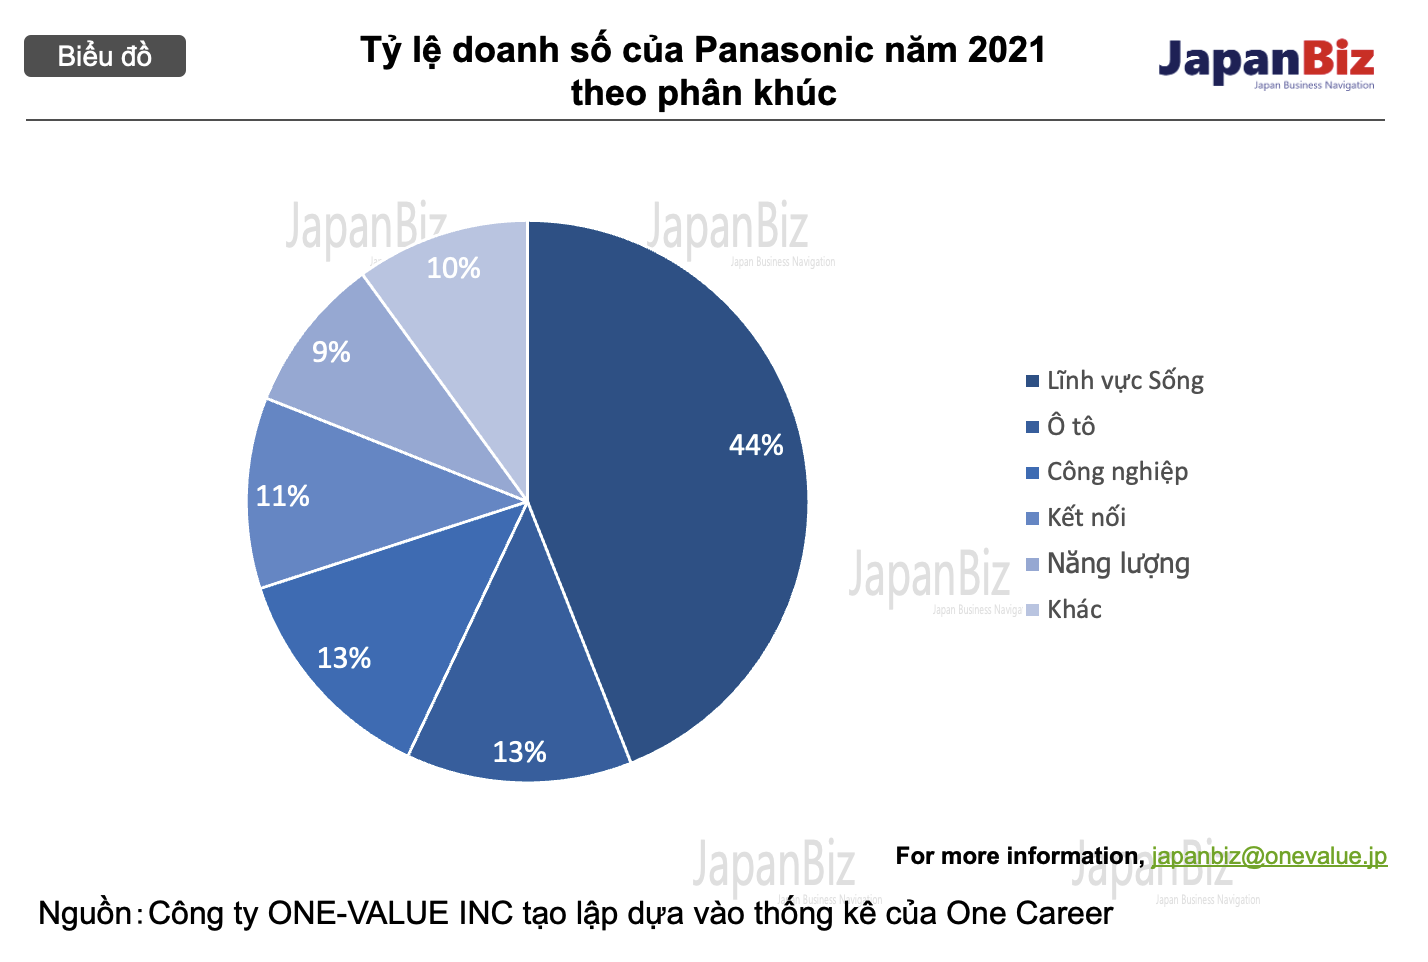 Tỷ lệ doanh số của Panasonic năm 2021 theo phân khúc